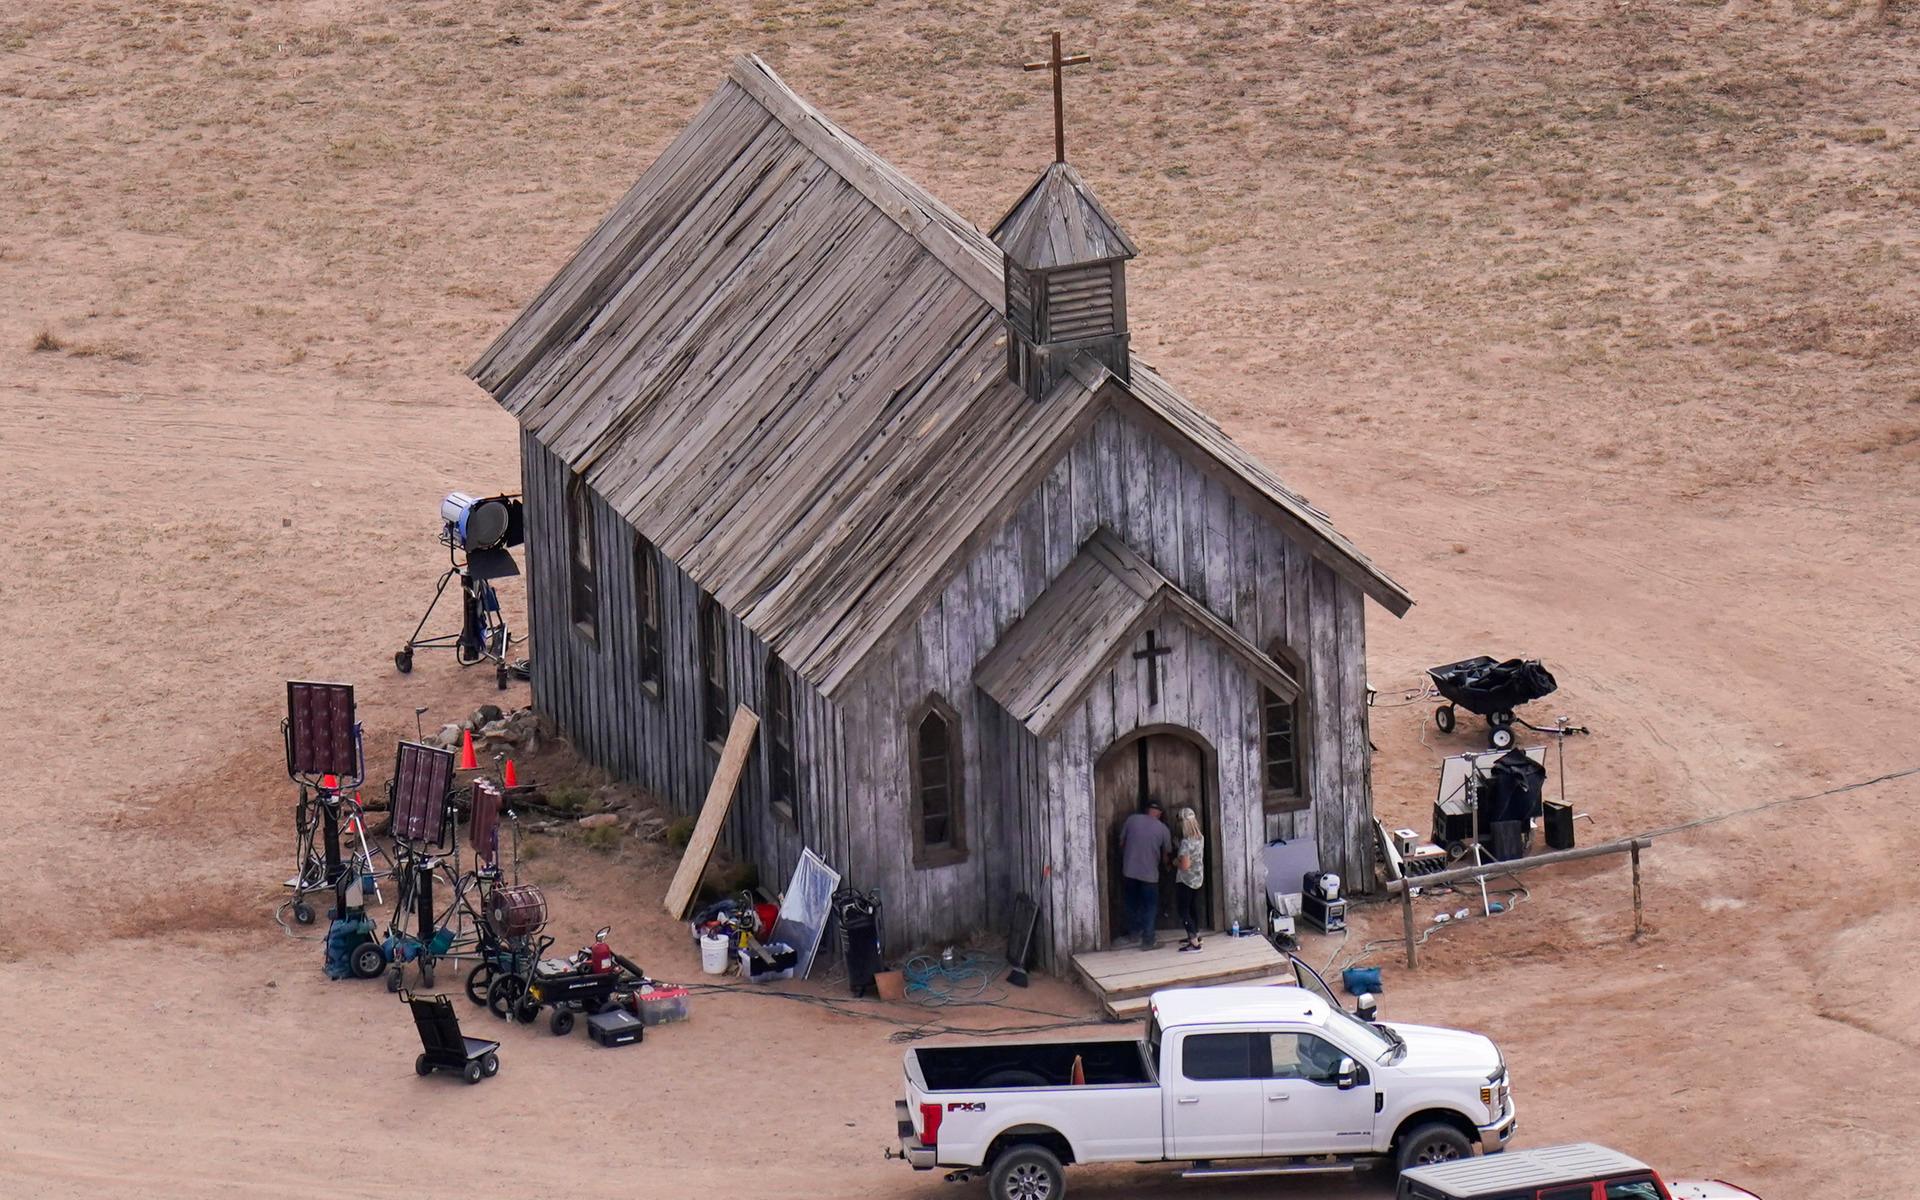 Den kyrka skjutningen inträffade i. ”Rust” är en västernfilm som utspelar sig på sent 1800-tal.